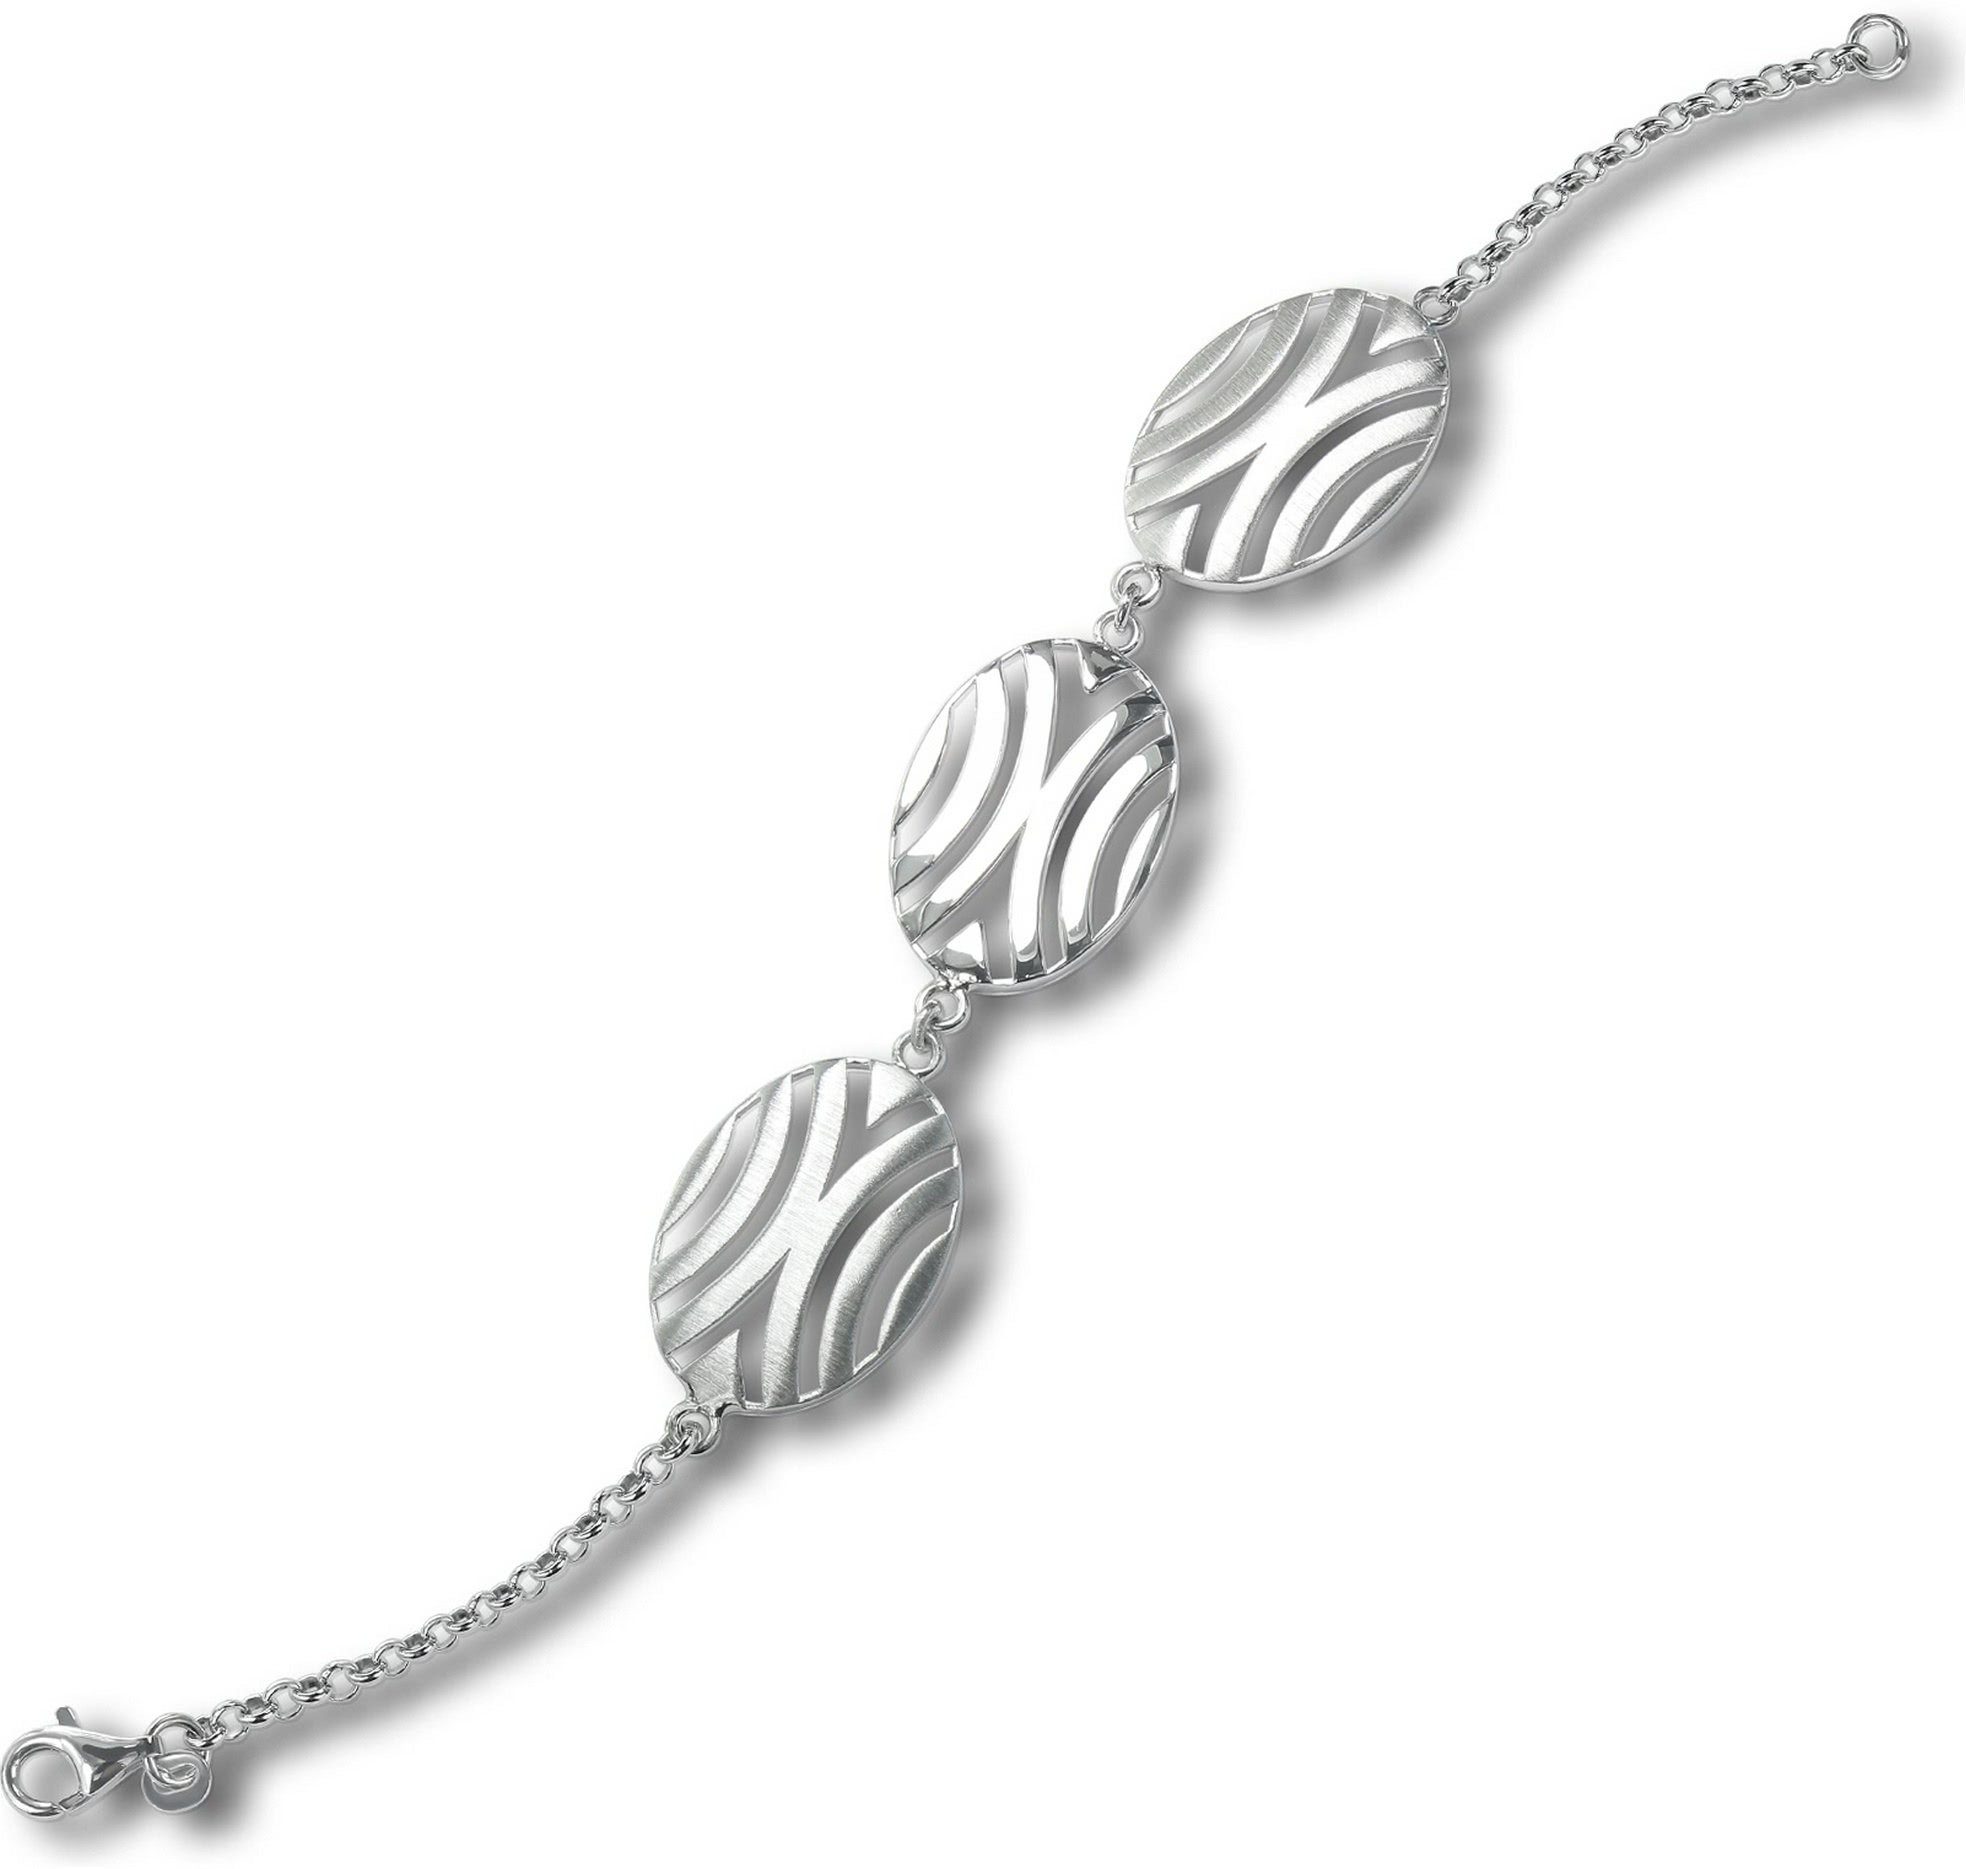 Balia Balia Armband (Afrika) Silber matt Silber ca. 19,3cm, Silberarmband 925 Silber Damen (Armband), 925 Armband